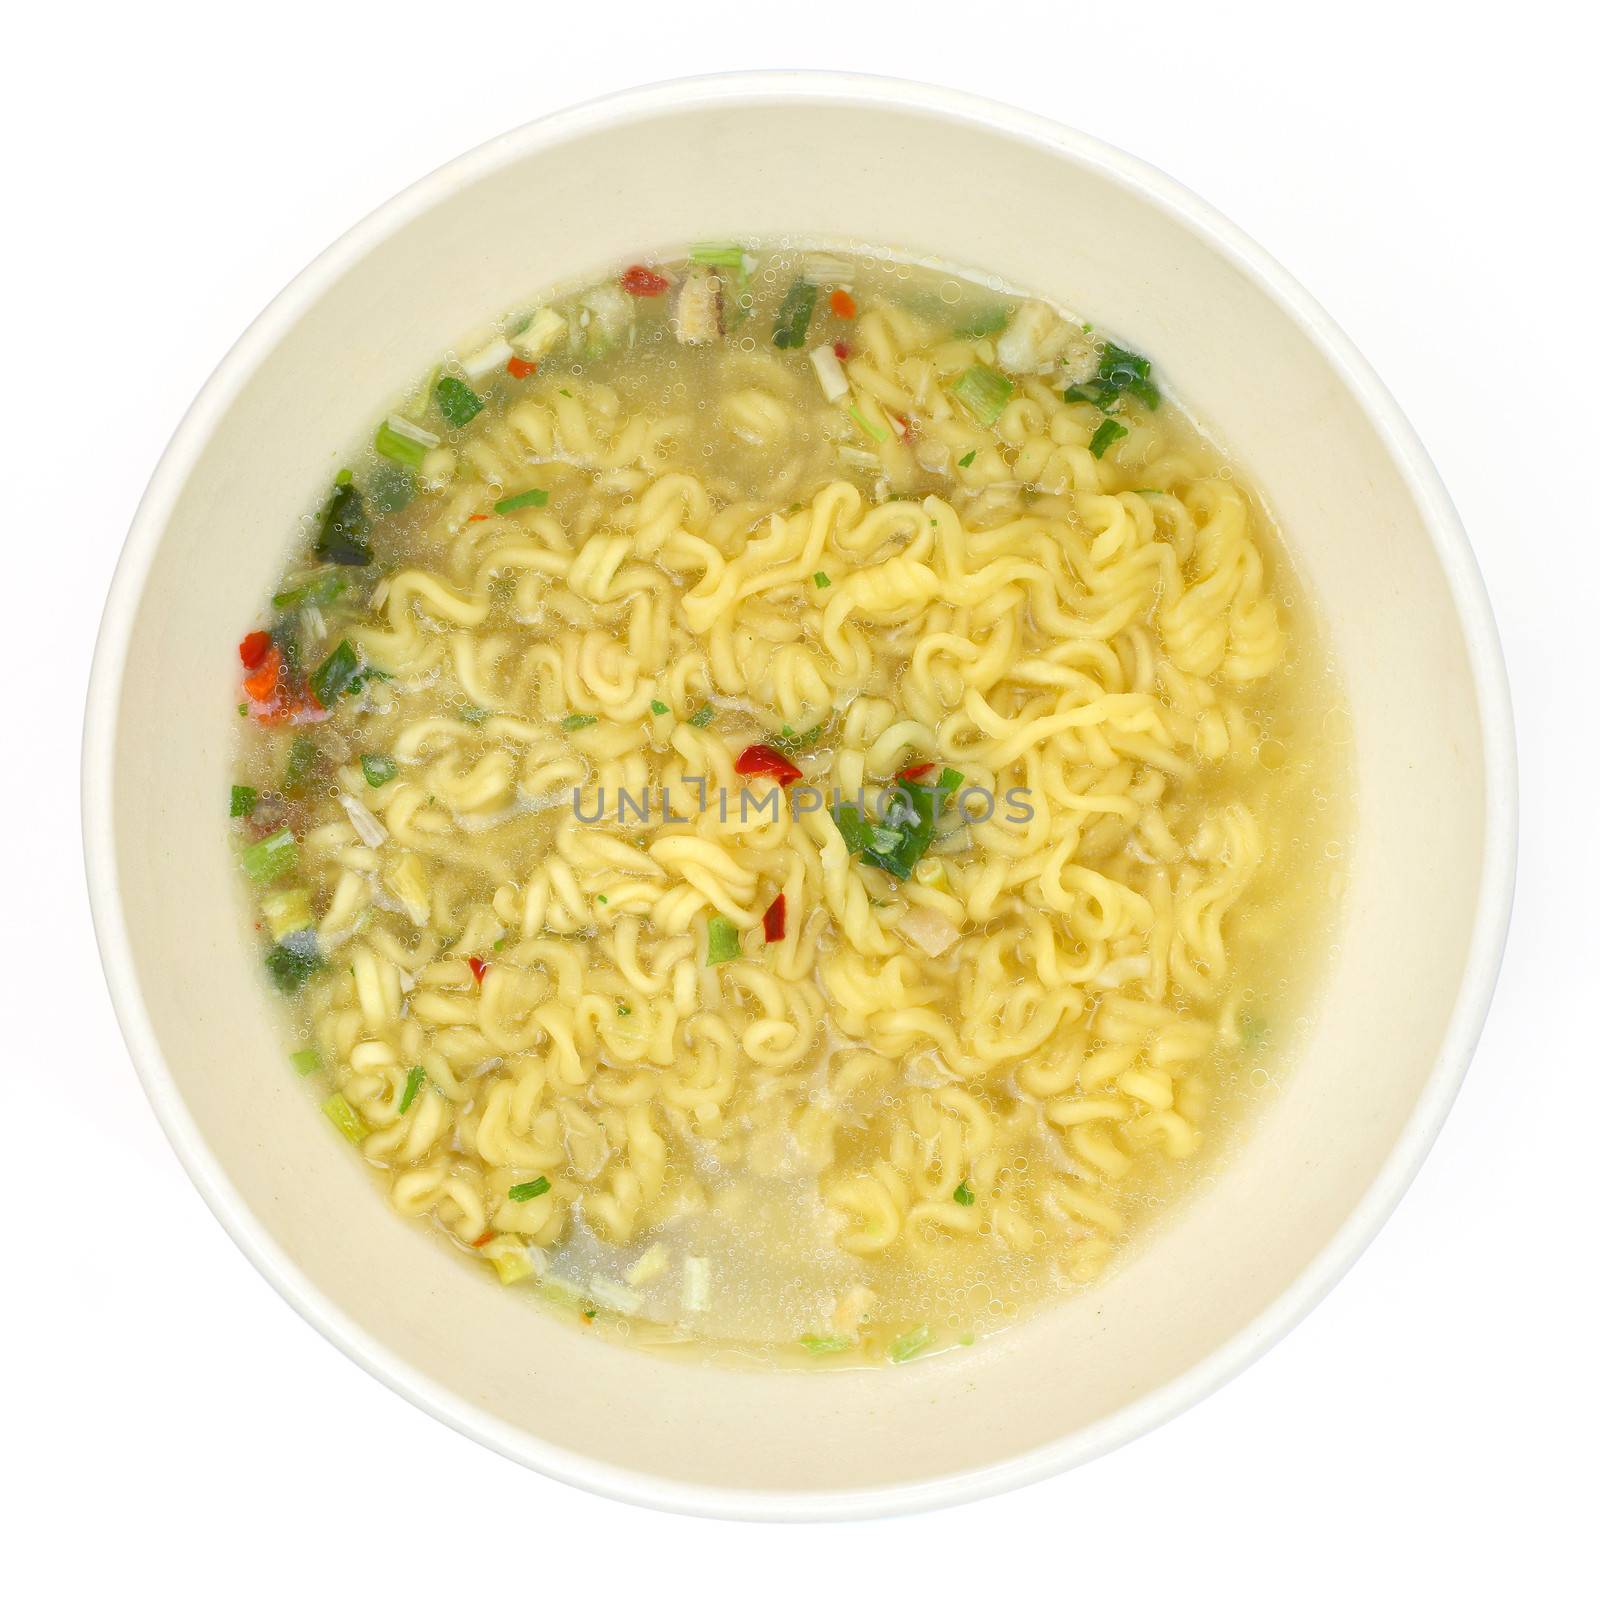 noodles by antpkr